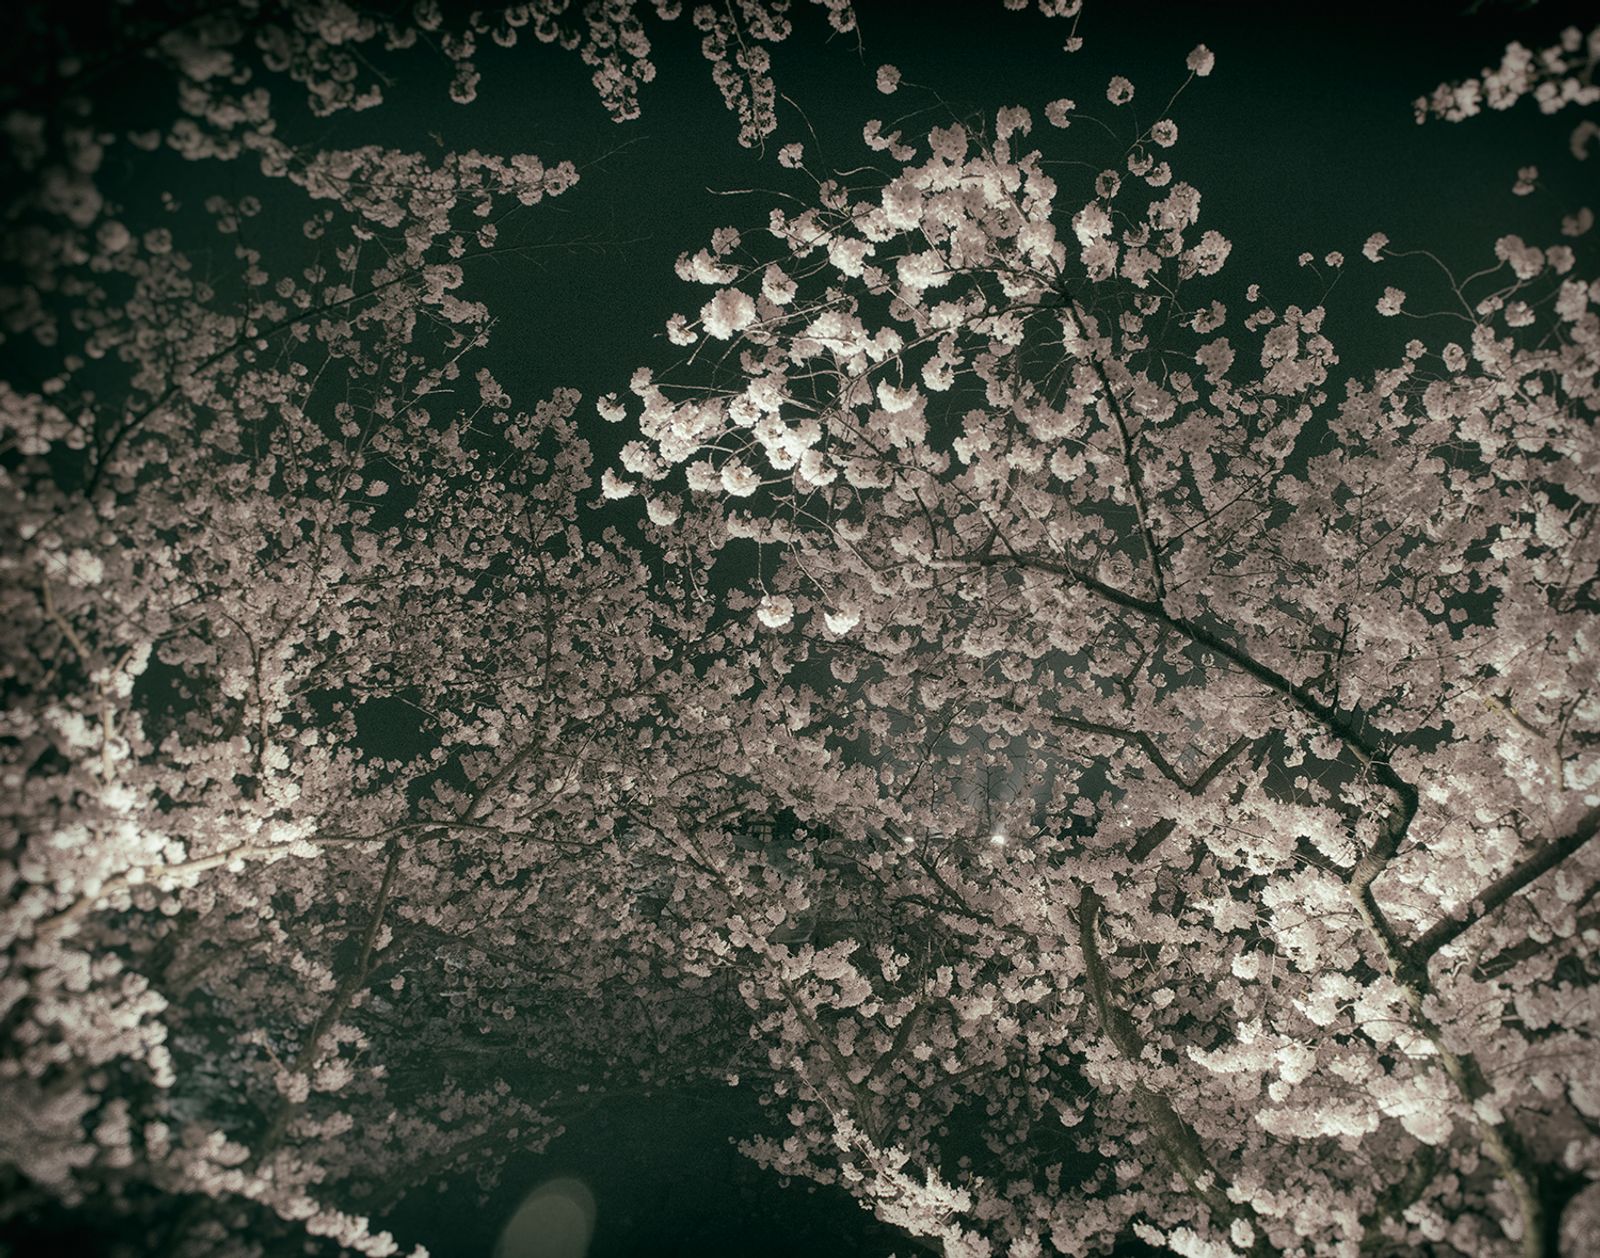 © Lieh Sugai - Sakura (cherry blossoms) blooming under the night sky at the peak of Sakura season in my hometown of Fukuoka.